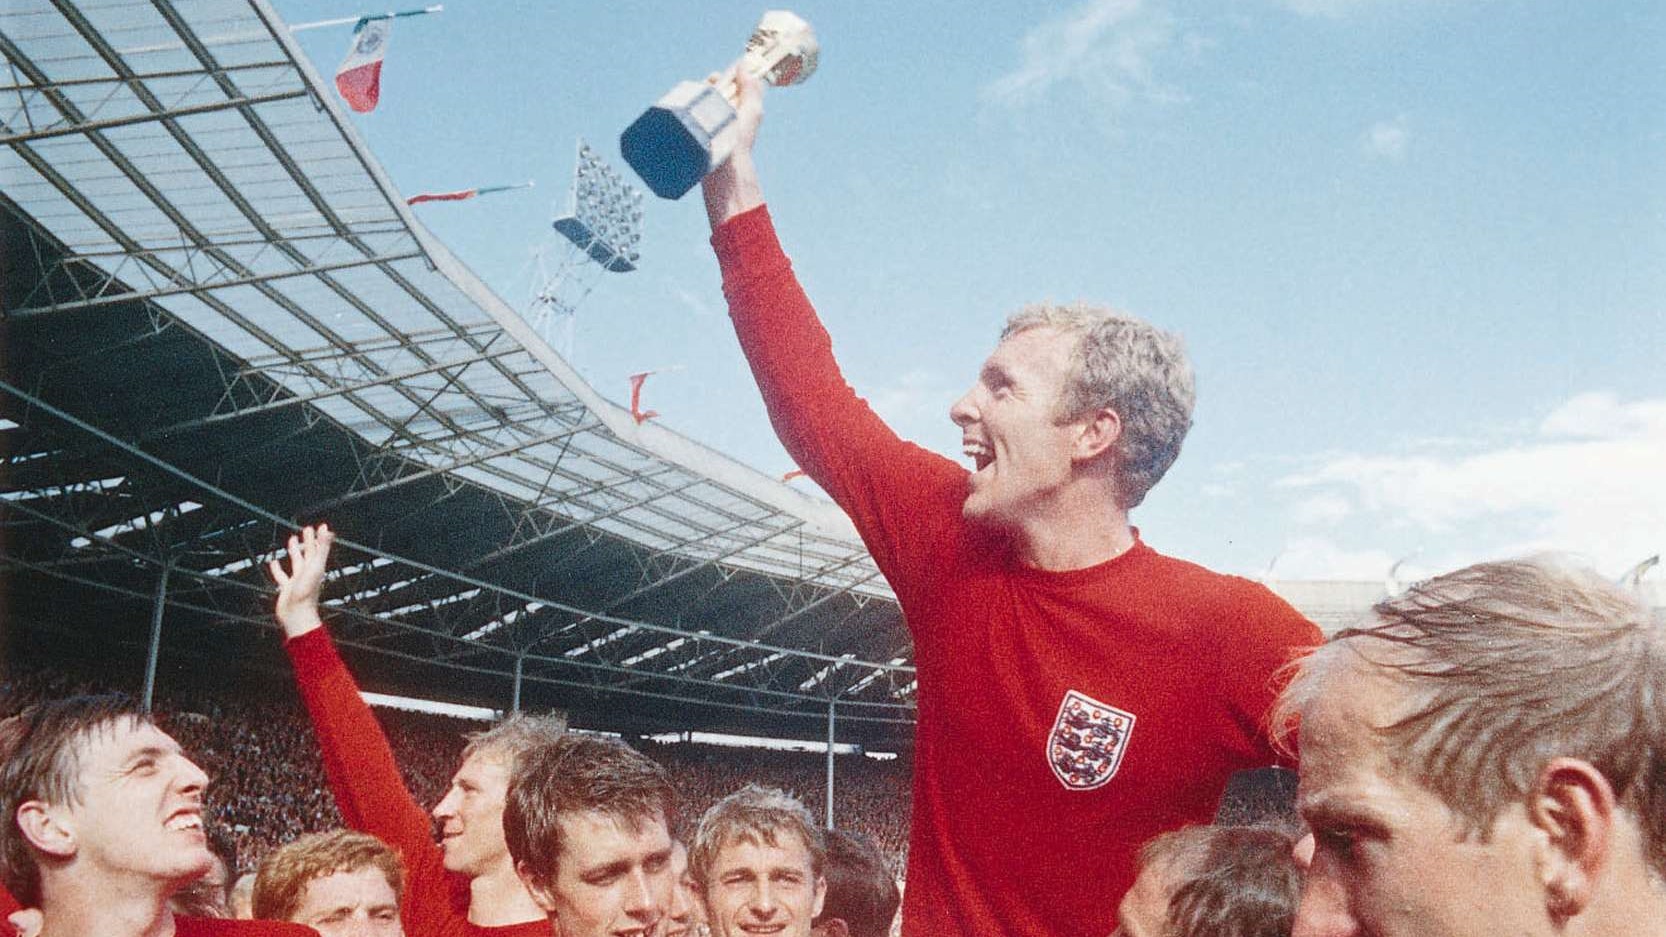 Nhìn lại đội hình ĐT Anh vô địch World Cup 1966: Quá khứ và hiện tại (P2)